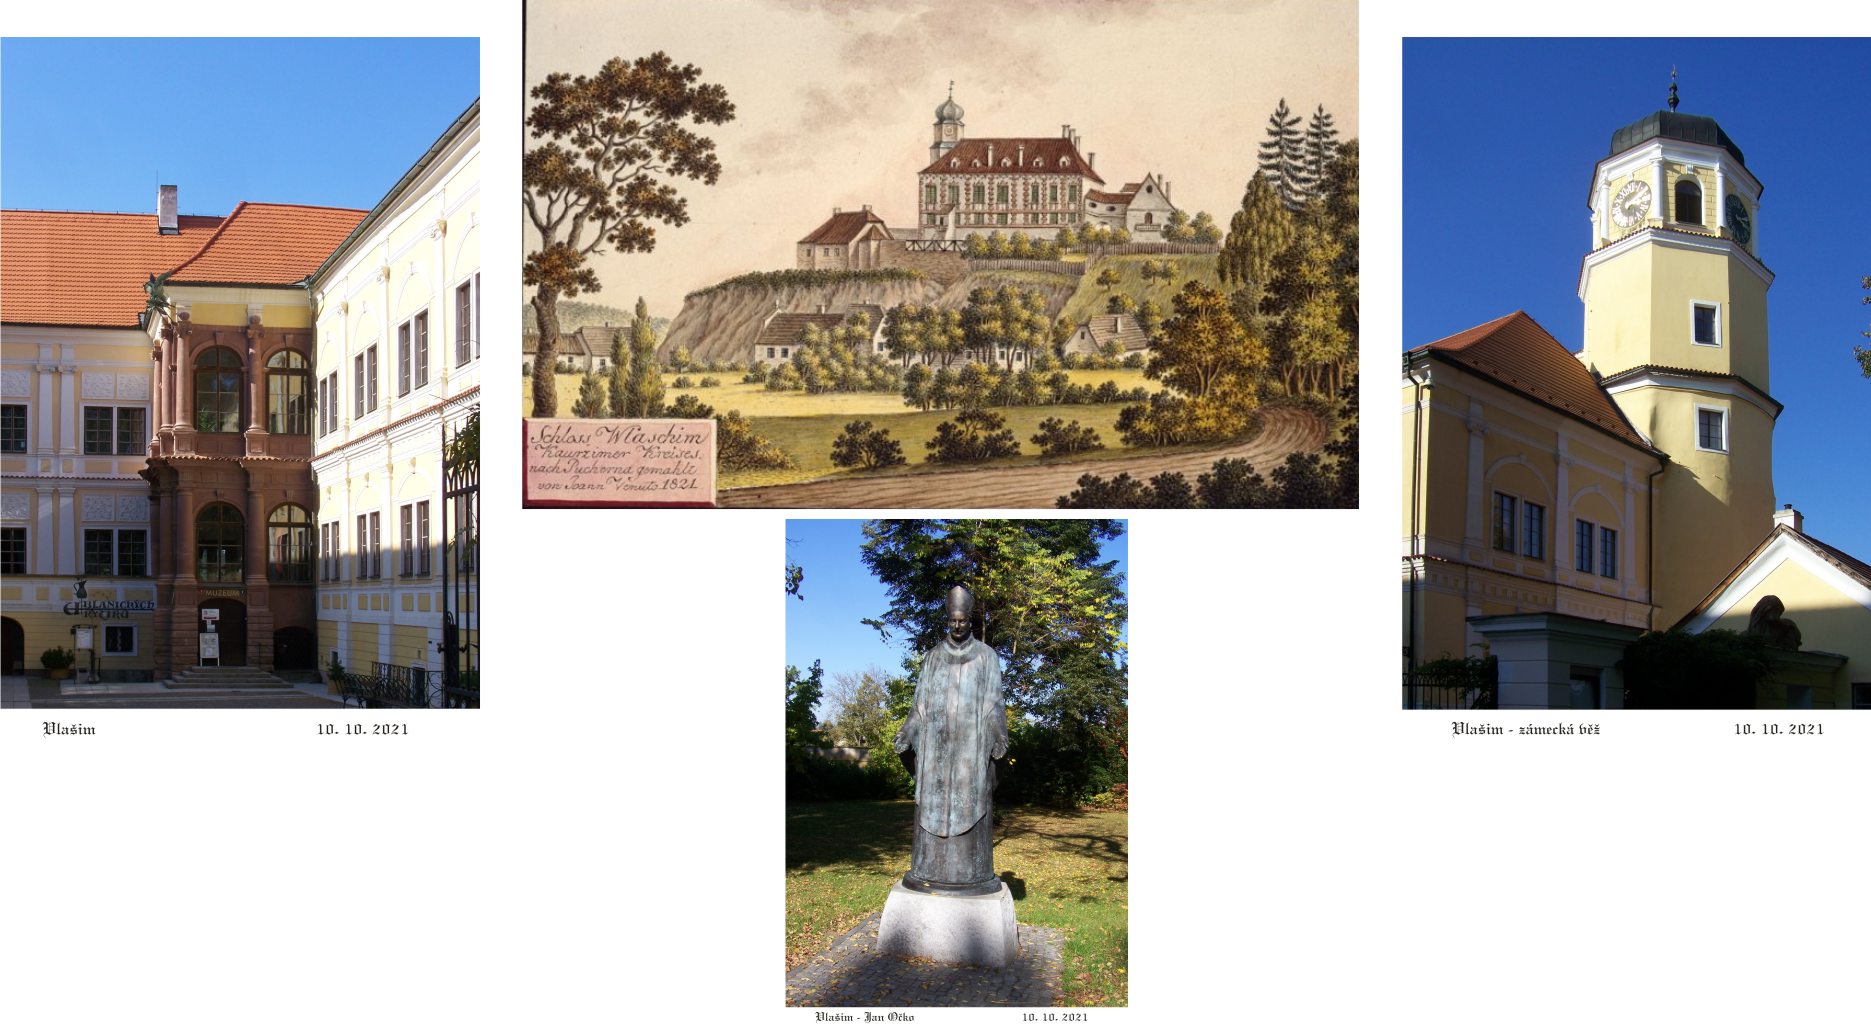 Vlašim - historický zámek využívaný k účelům muzejním, školským, společenským i gastronomickým.